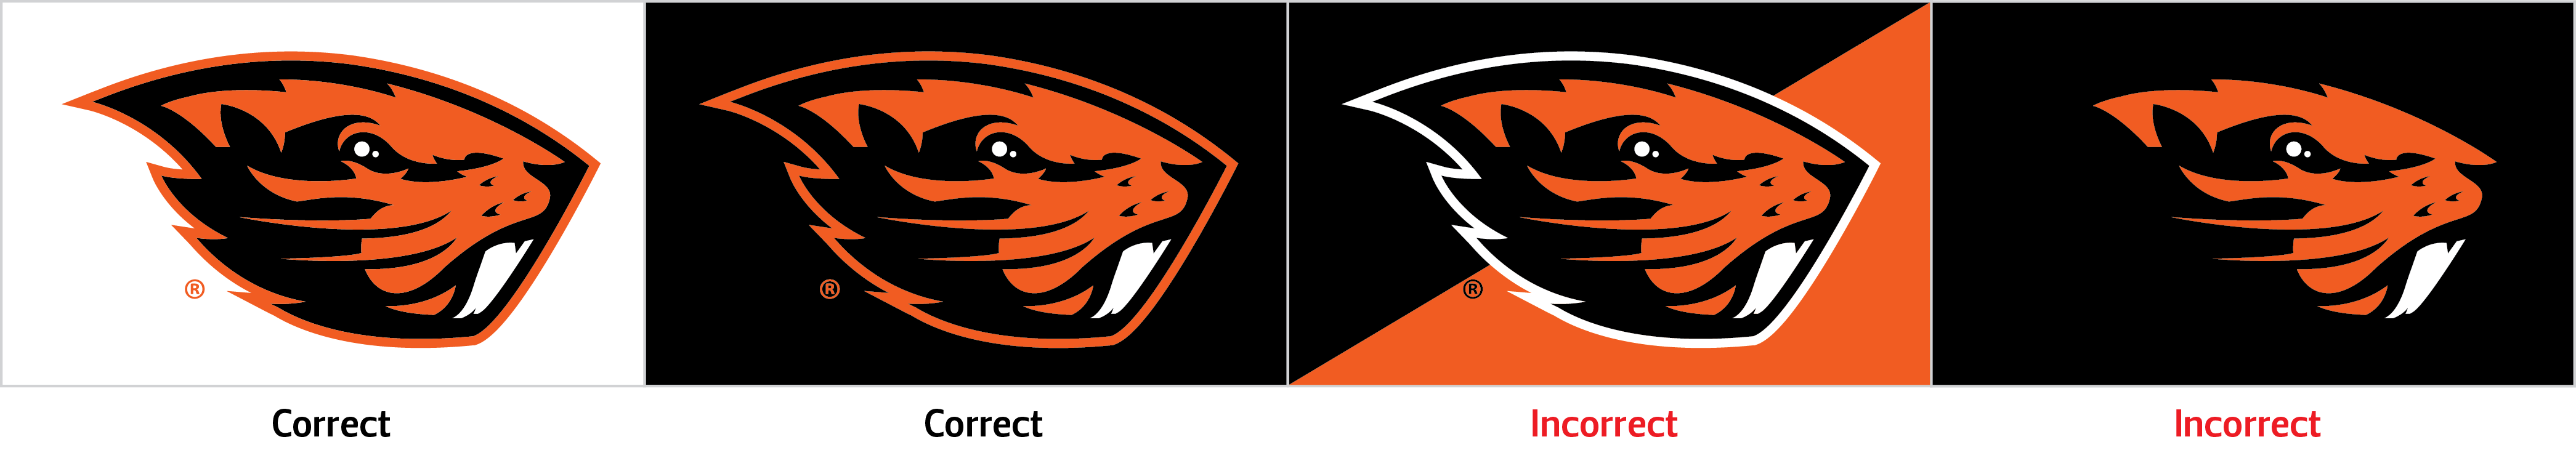 Beaver Logo - Beaver logo | University Relations and Marketing | Oregon State ...